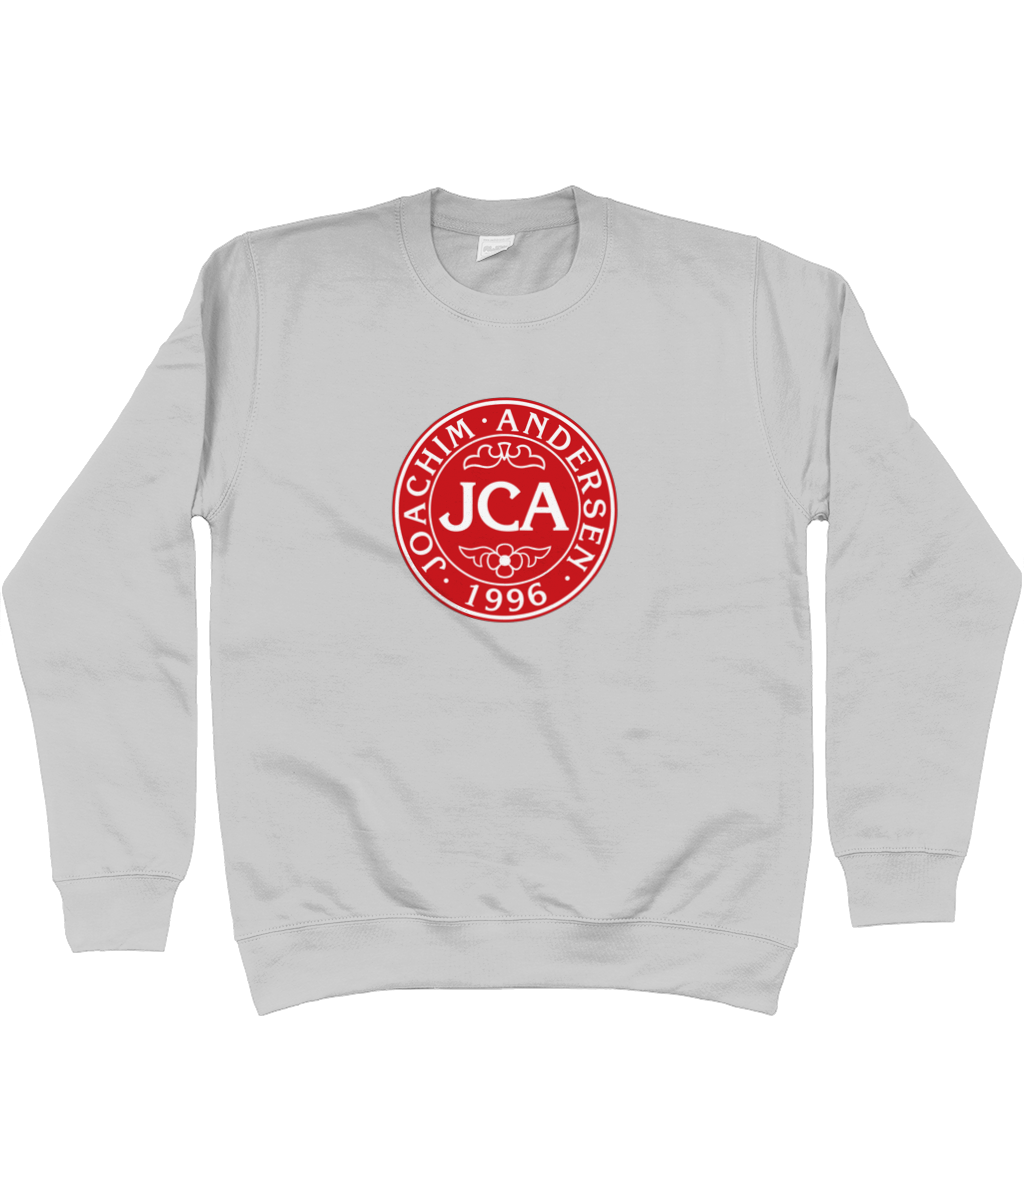 Joachim Andersen JCA - Sweatshirt